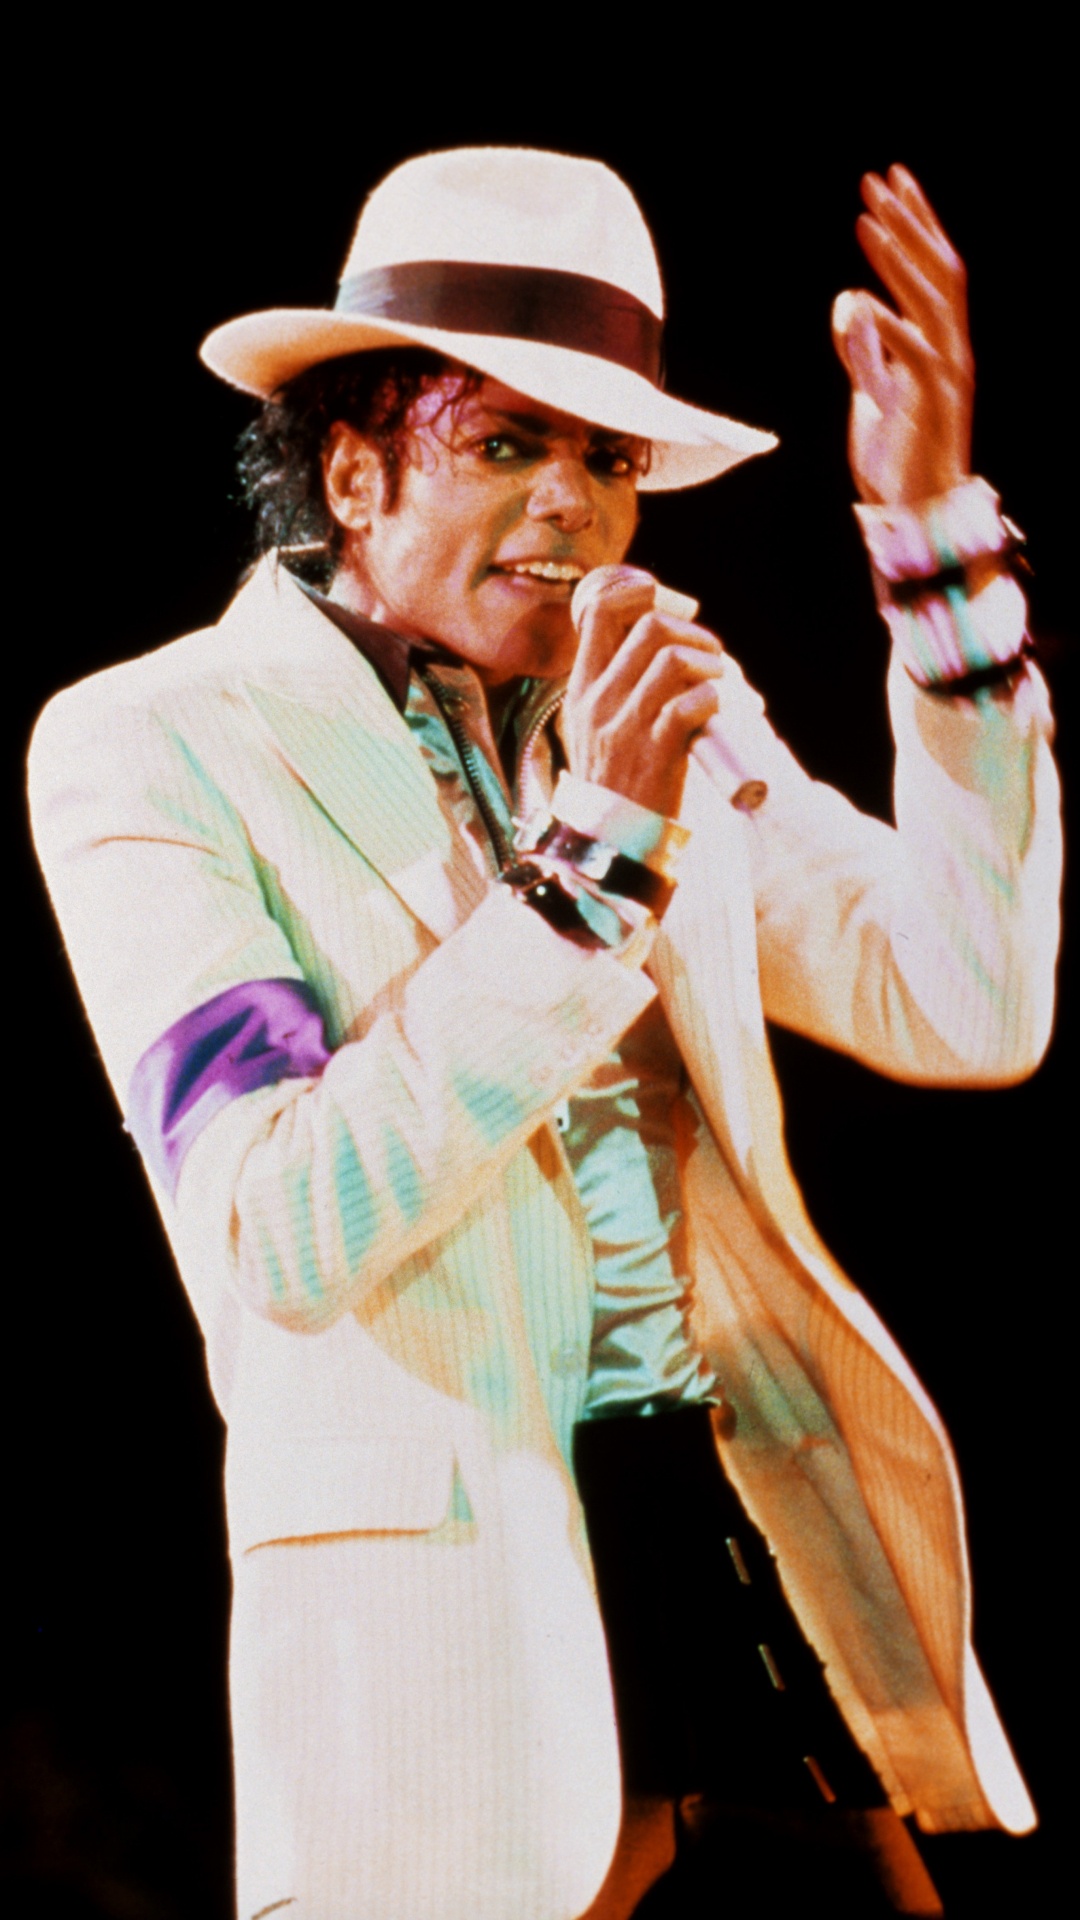 迈克尔*杰克逊, 糟糕, 性能, 音乐艺术家, 歌手 壁纸 1080x1920 允许